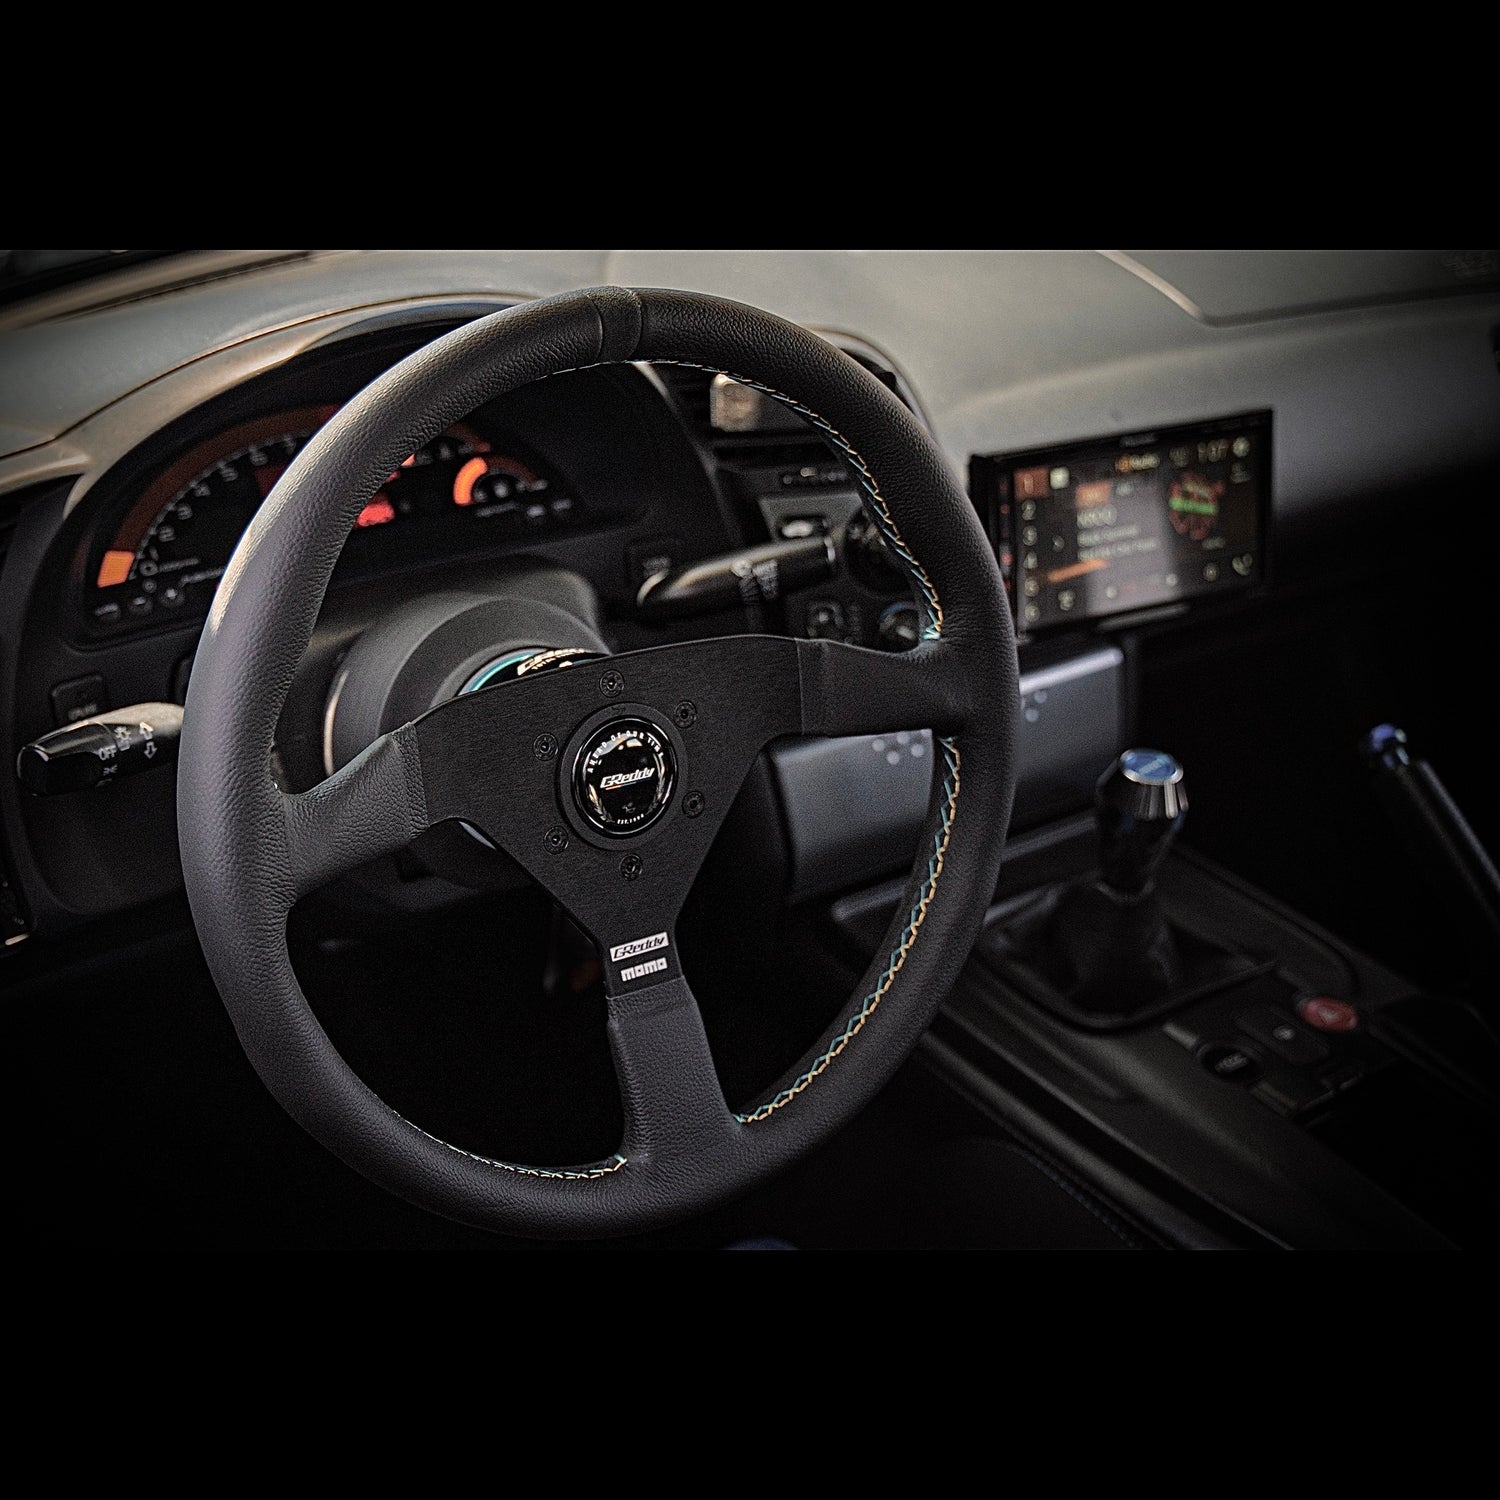 Momo x Greddy collaboration Monte Carlo steering wheel in a Honda s2000